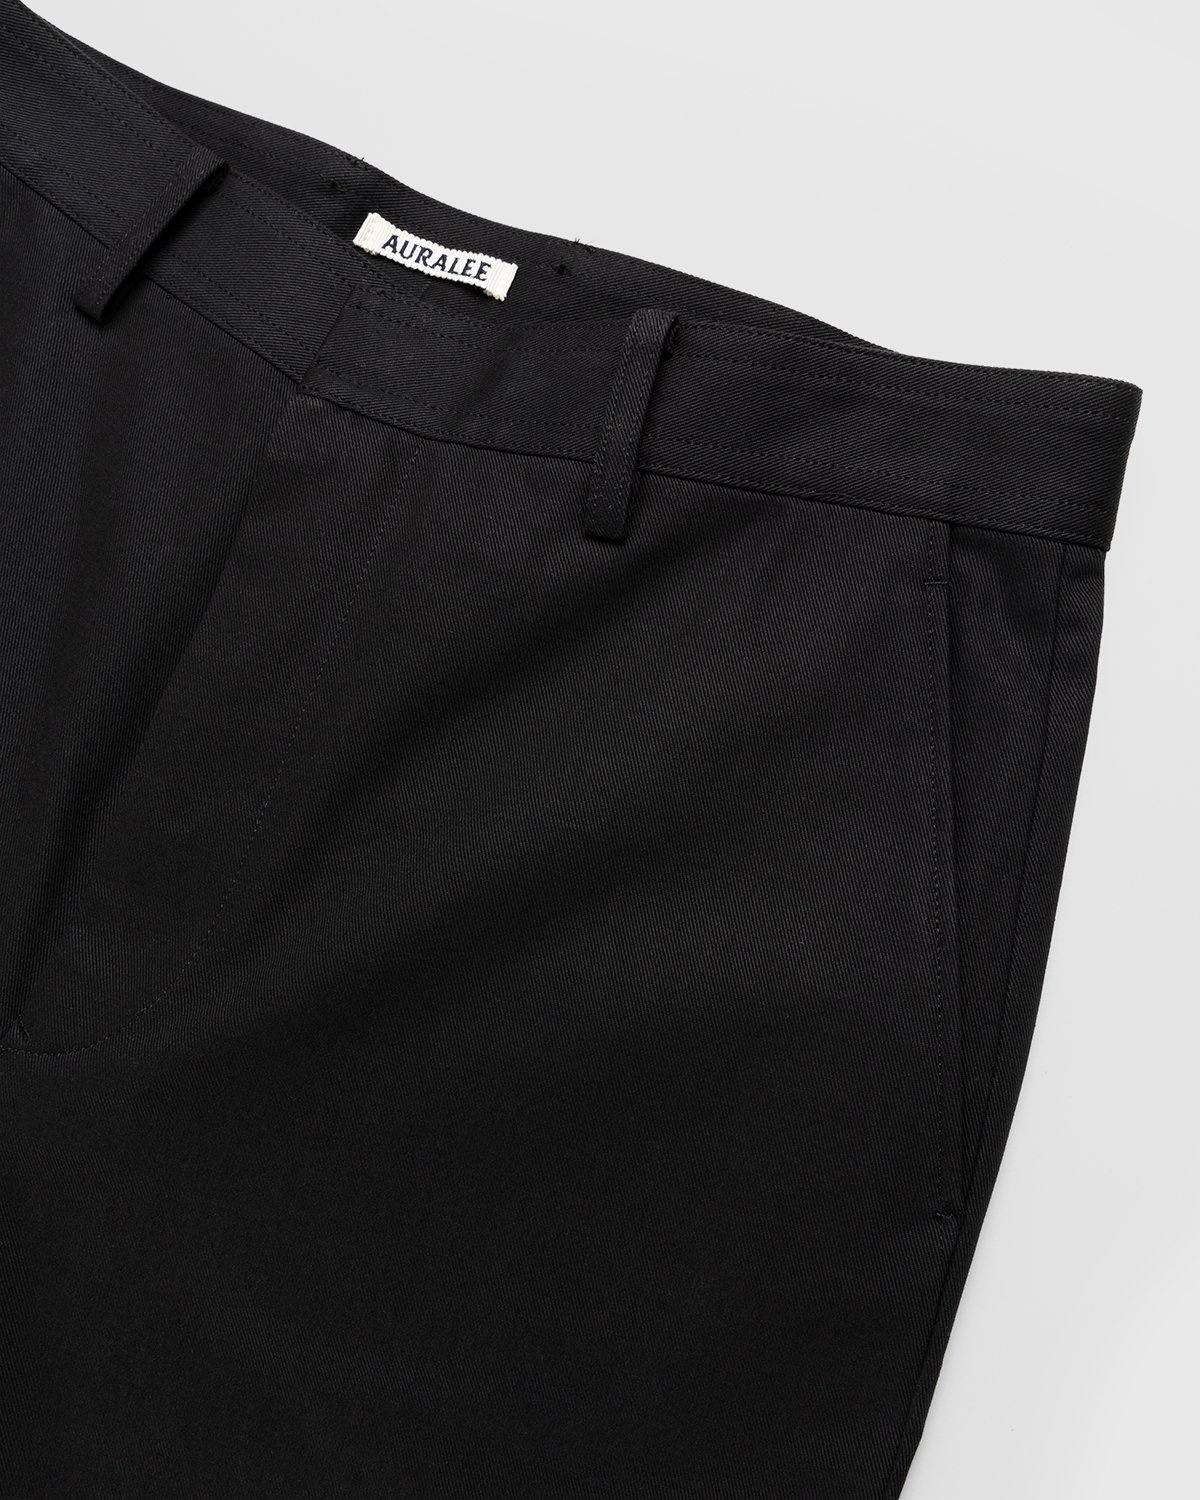 Auralee – Cotton Woven Pants Black - Pants - Black - Image 5